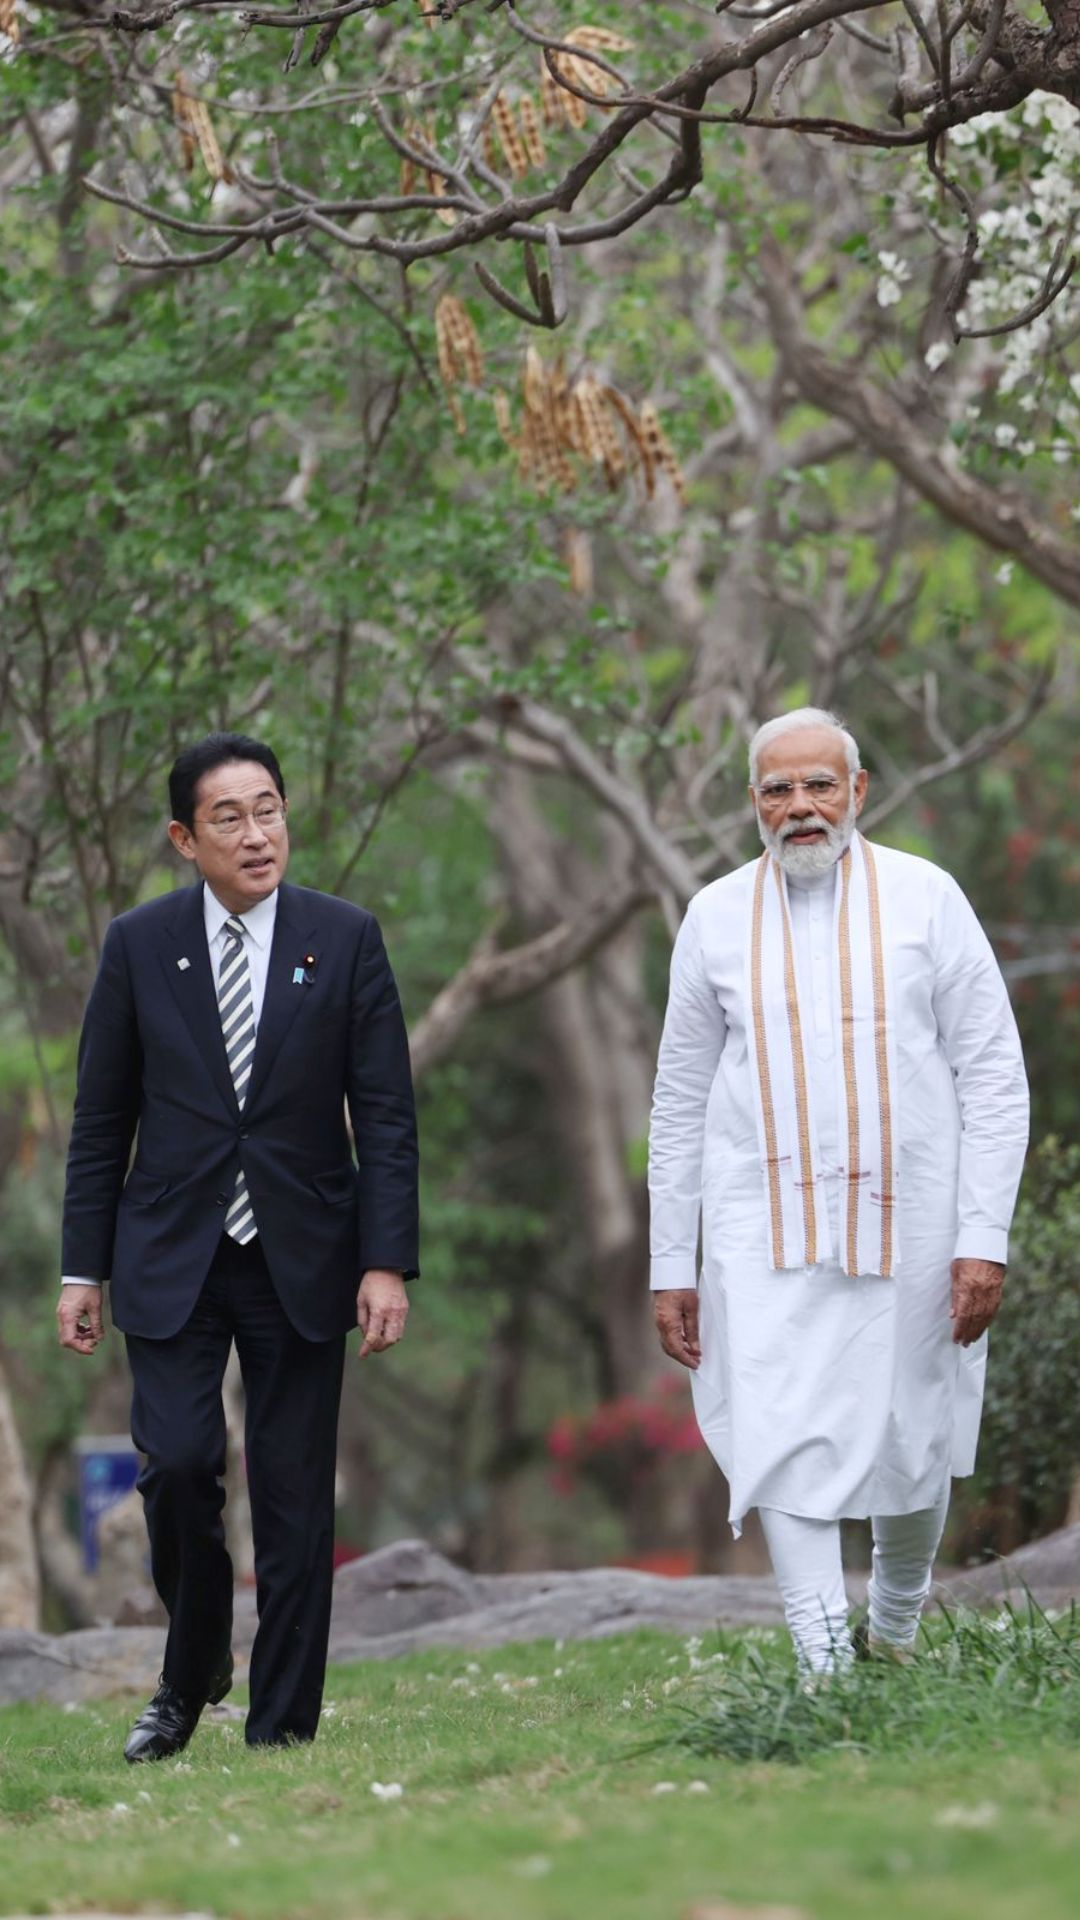 पार्क में घूमे भारत और जापान के PM, खाए गोलगप्पे और पी चाय 